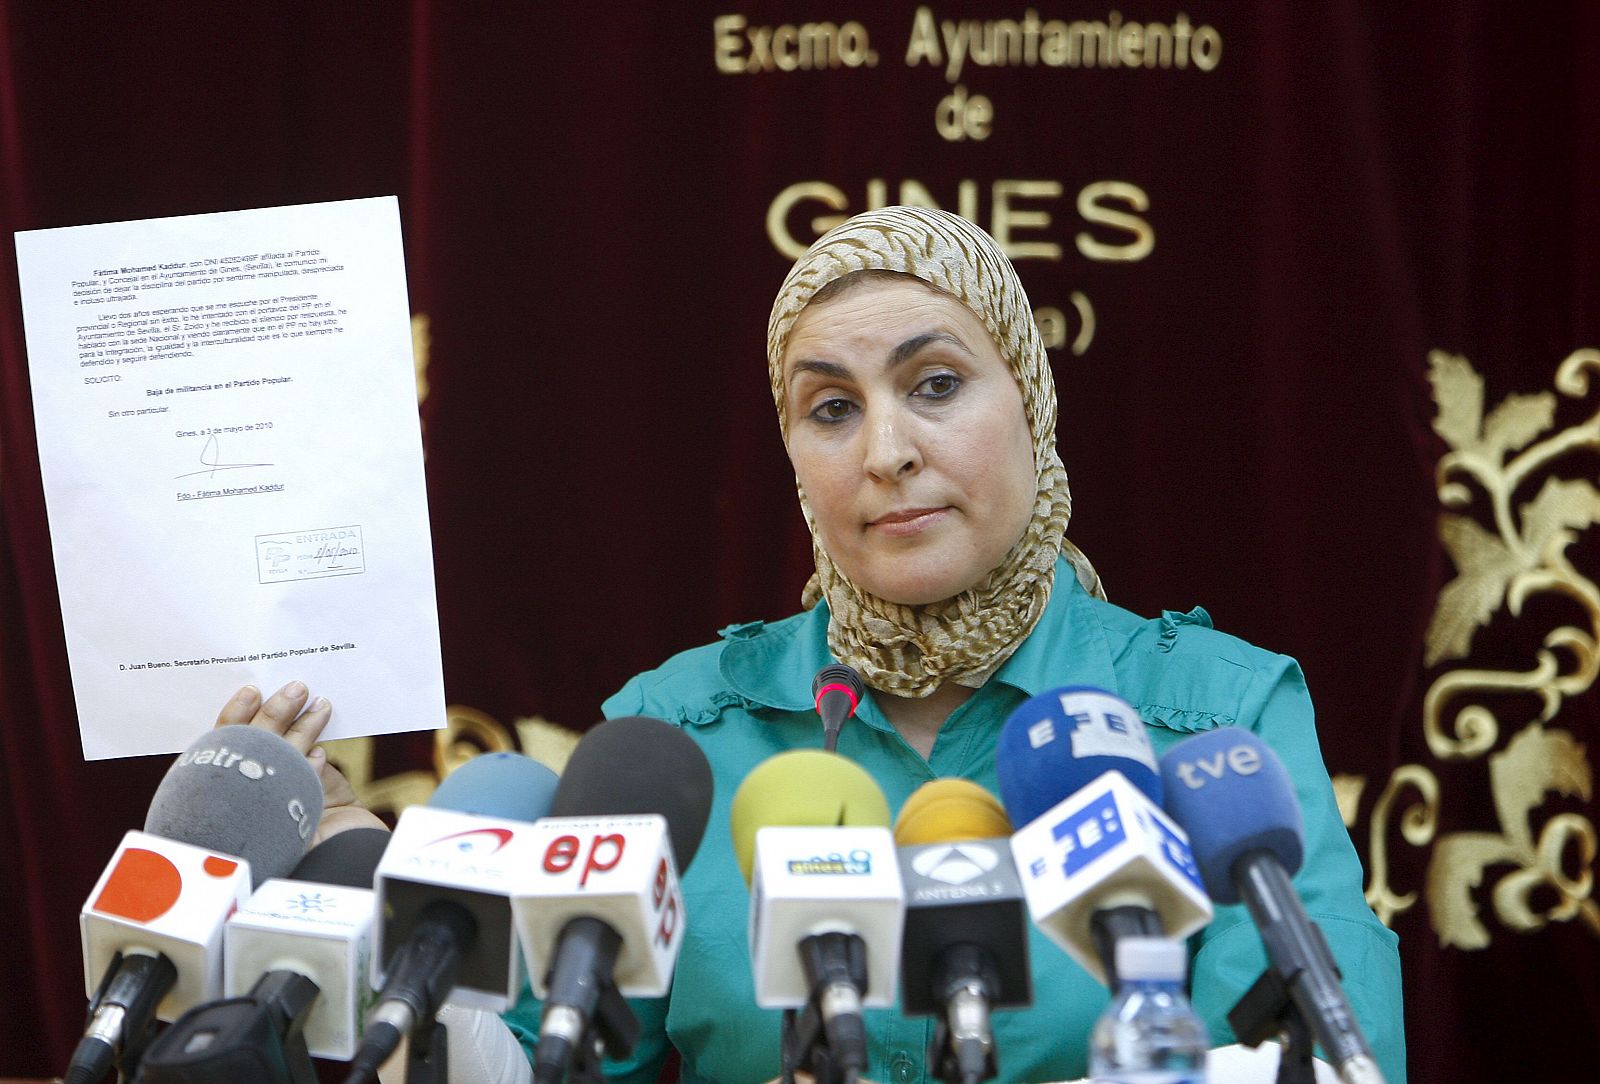 La concejal de Gines (Sevilla) Fátima Mohamed deja el PP por sentirse "usada" en la polémica del velo islámico